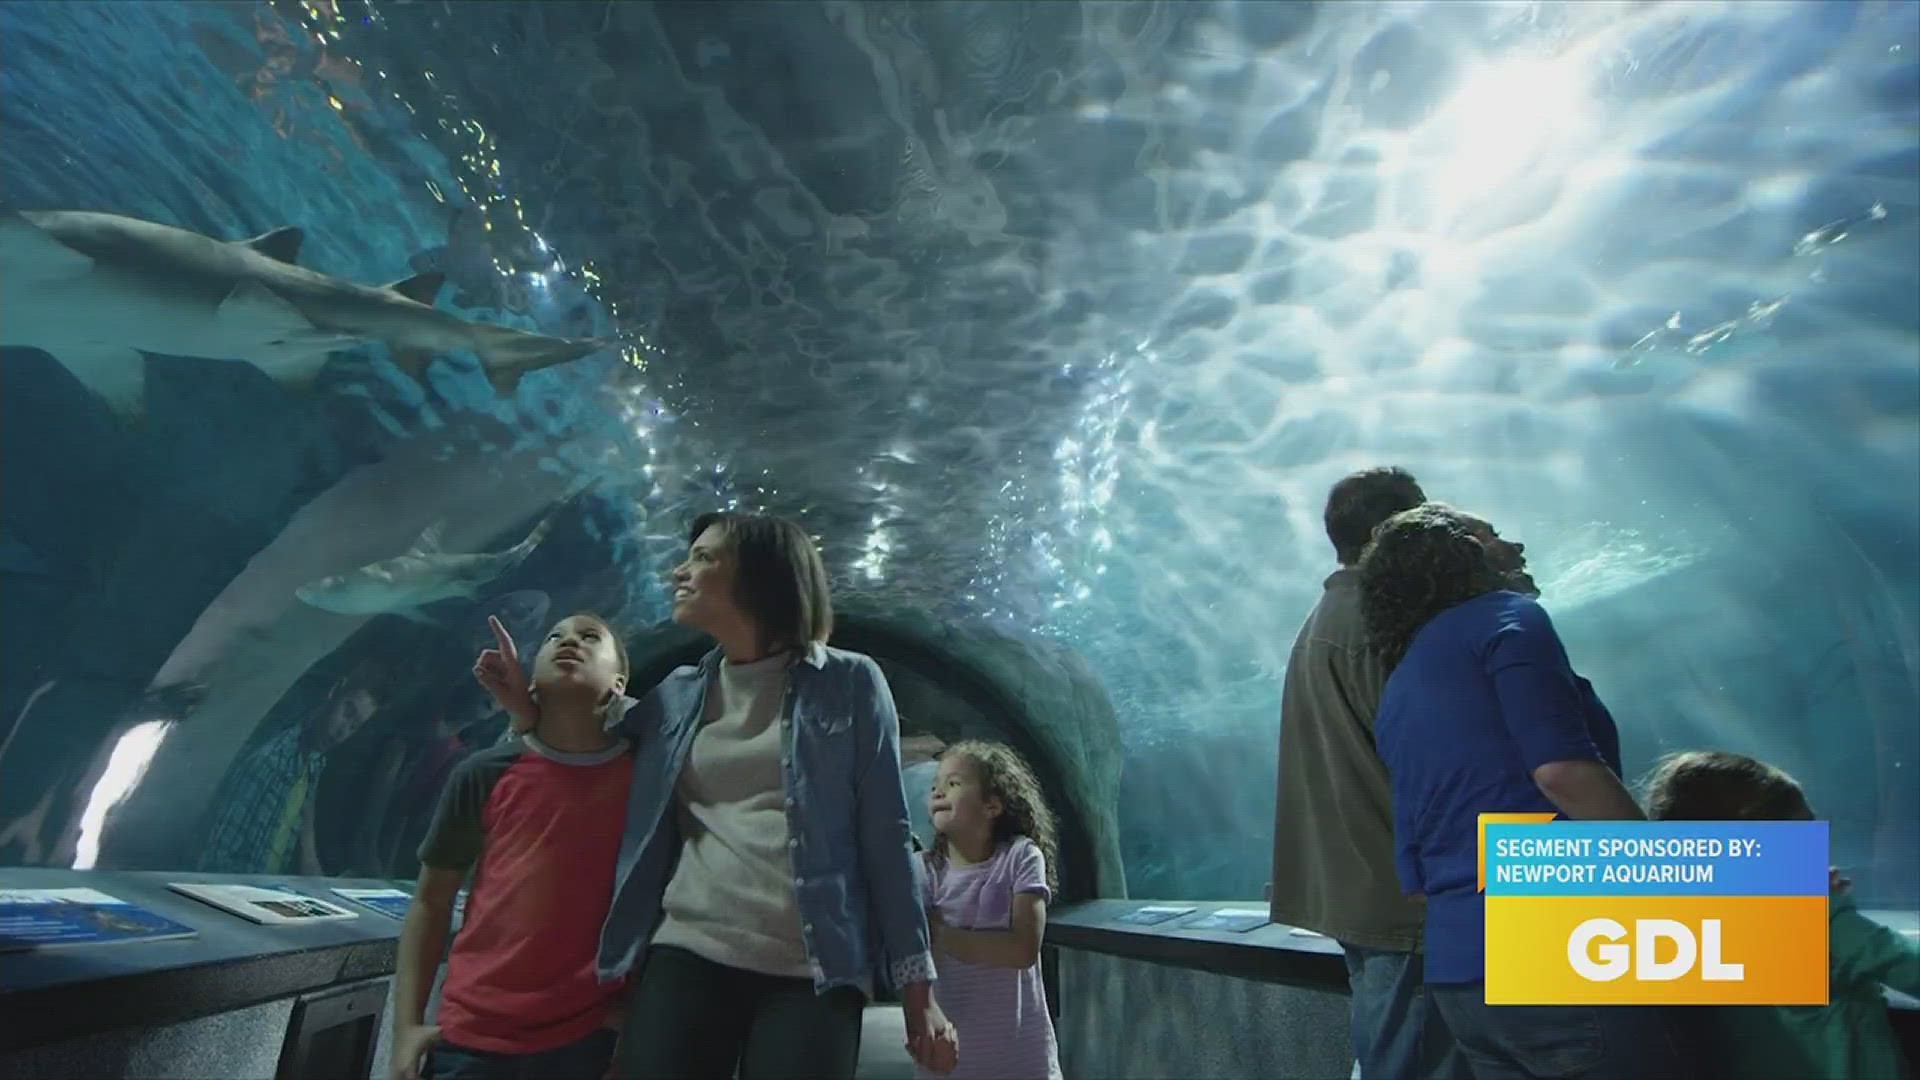 Newport Aquarium showcased their